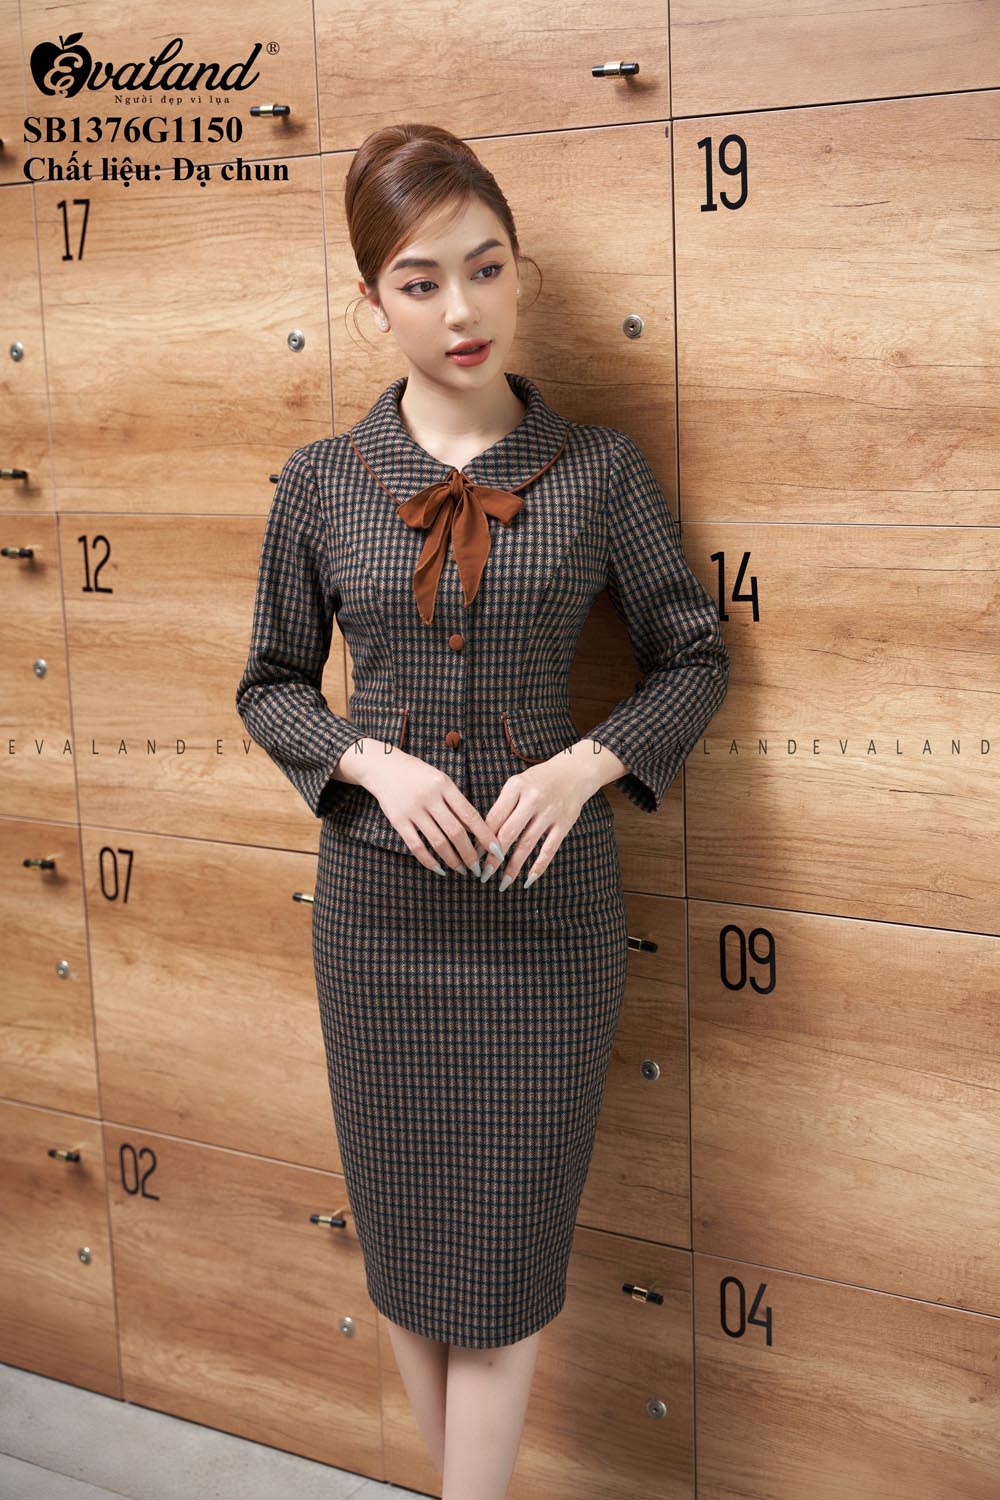 11 Mẫu đồ công sở nữ Hàn Quốc đẹp, cho nàng mix đồ cực sang chảnh